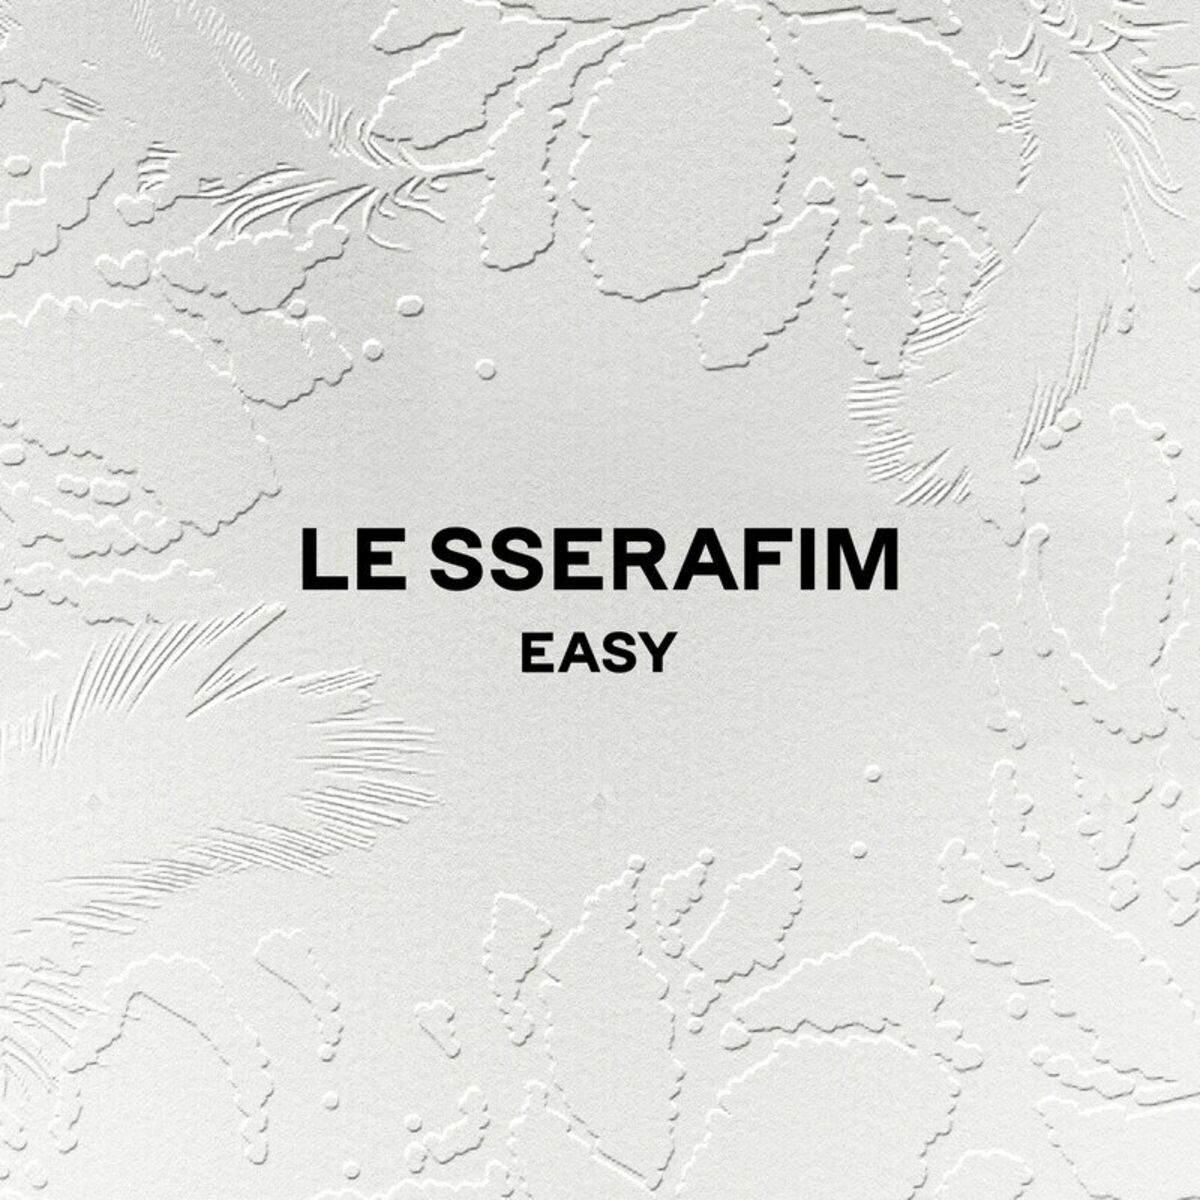 LE SSERAFIM - We got so much